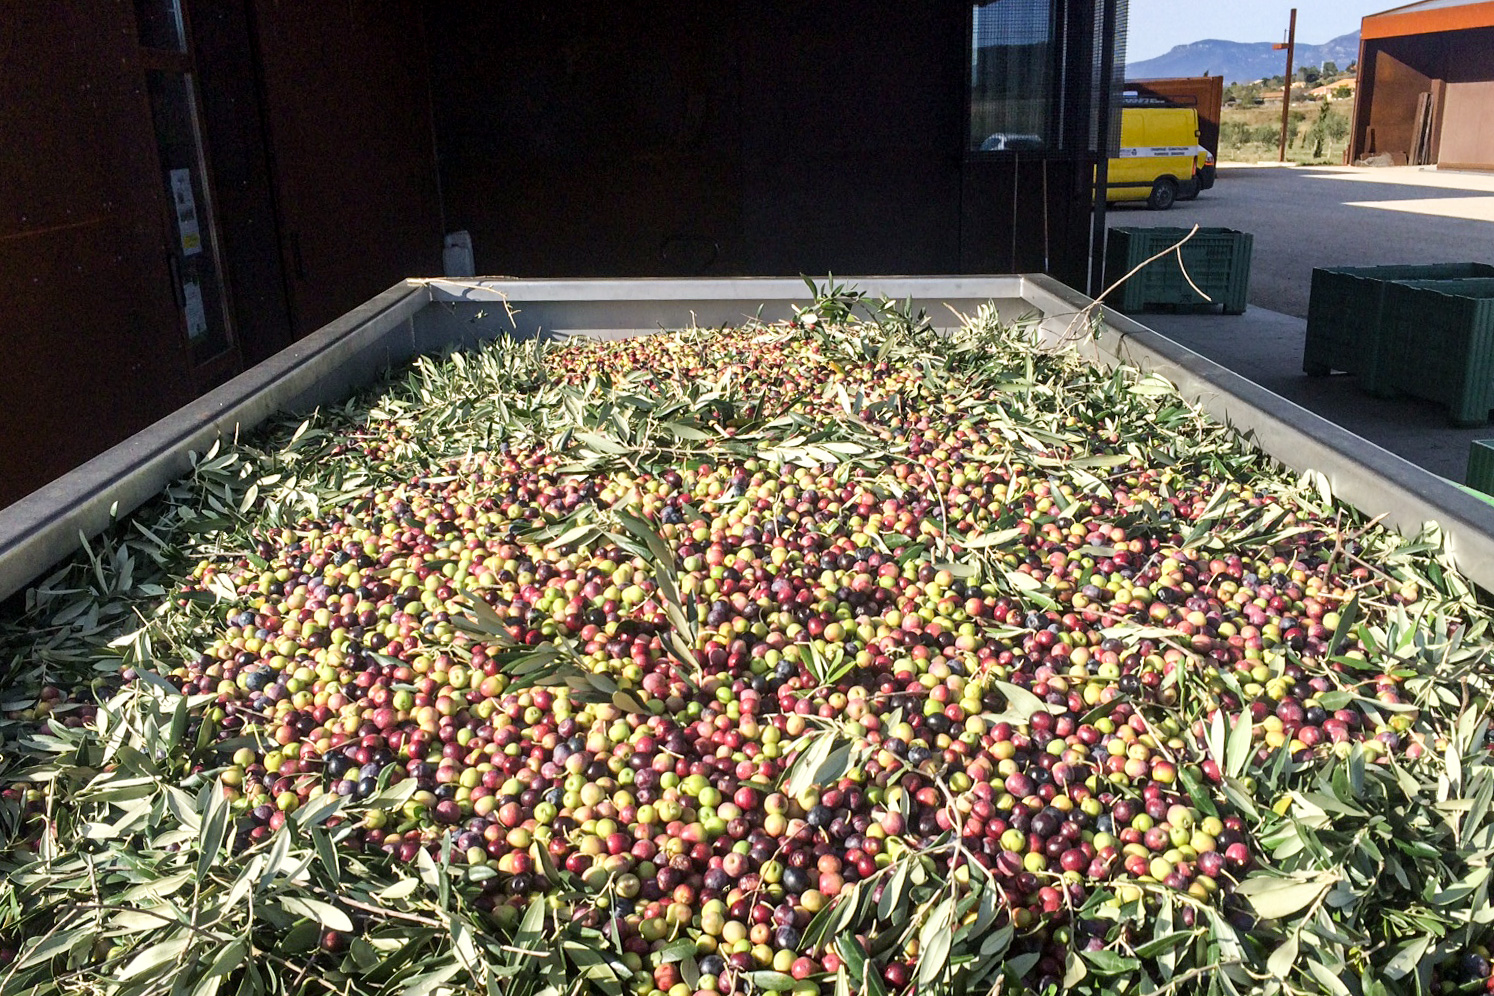 Nous possédons un système de tri automatique des olives et des éléments indésirables (feuilles, branches...)